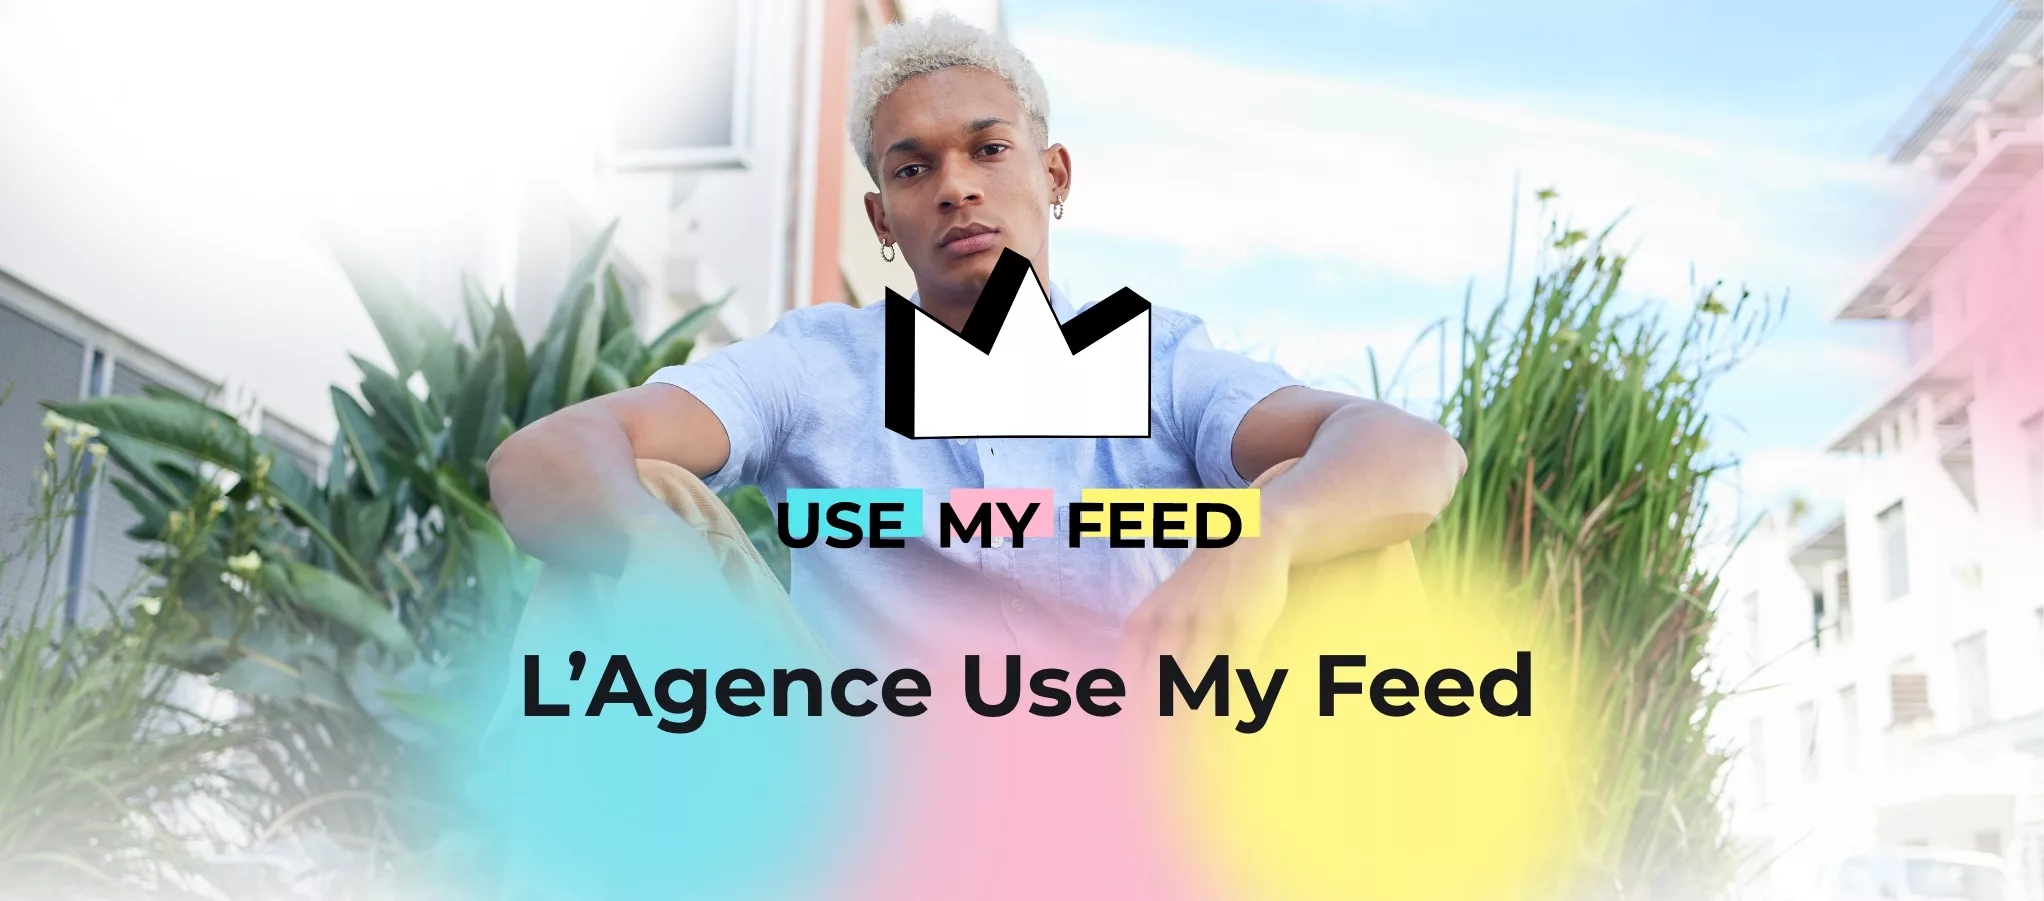 Use My Feed Agency, c’est l’agence qui choisit les campagnes qui correspondent à votre communauté et vos valeurs